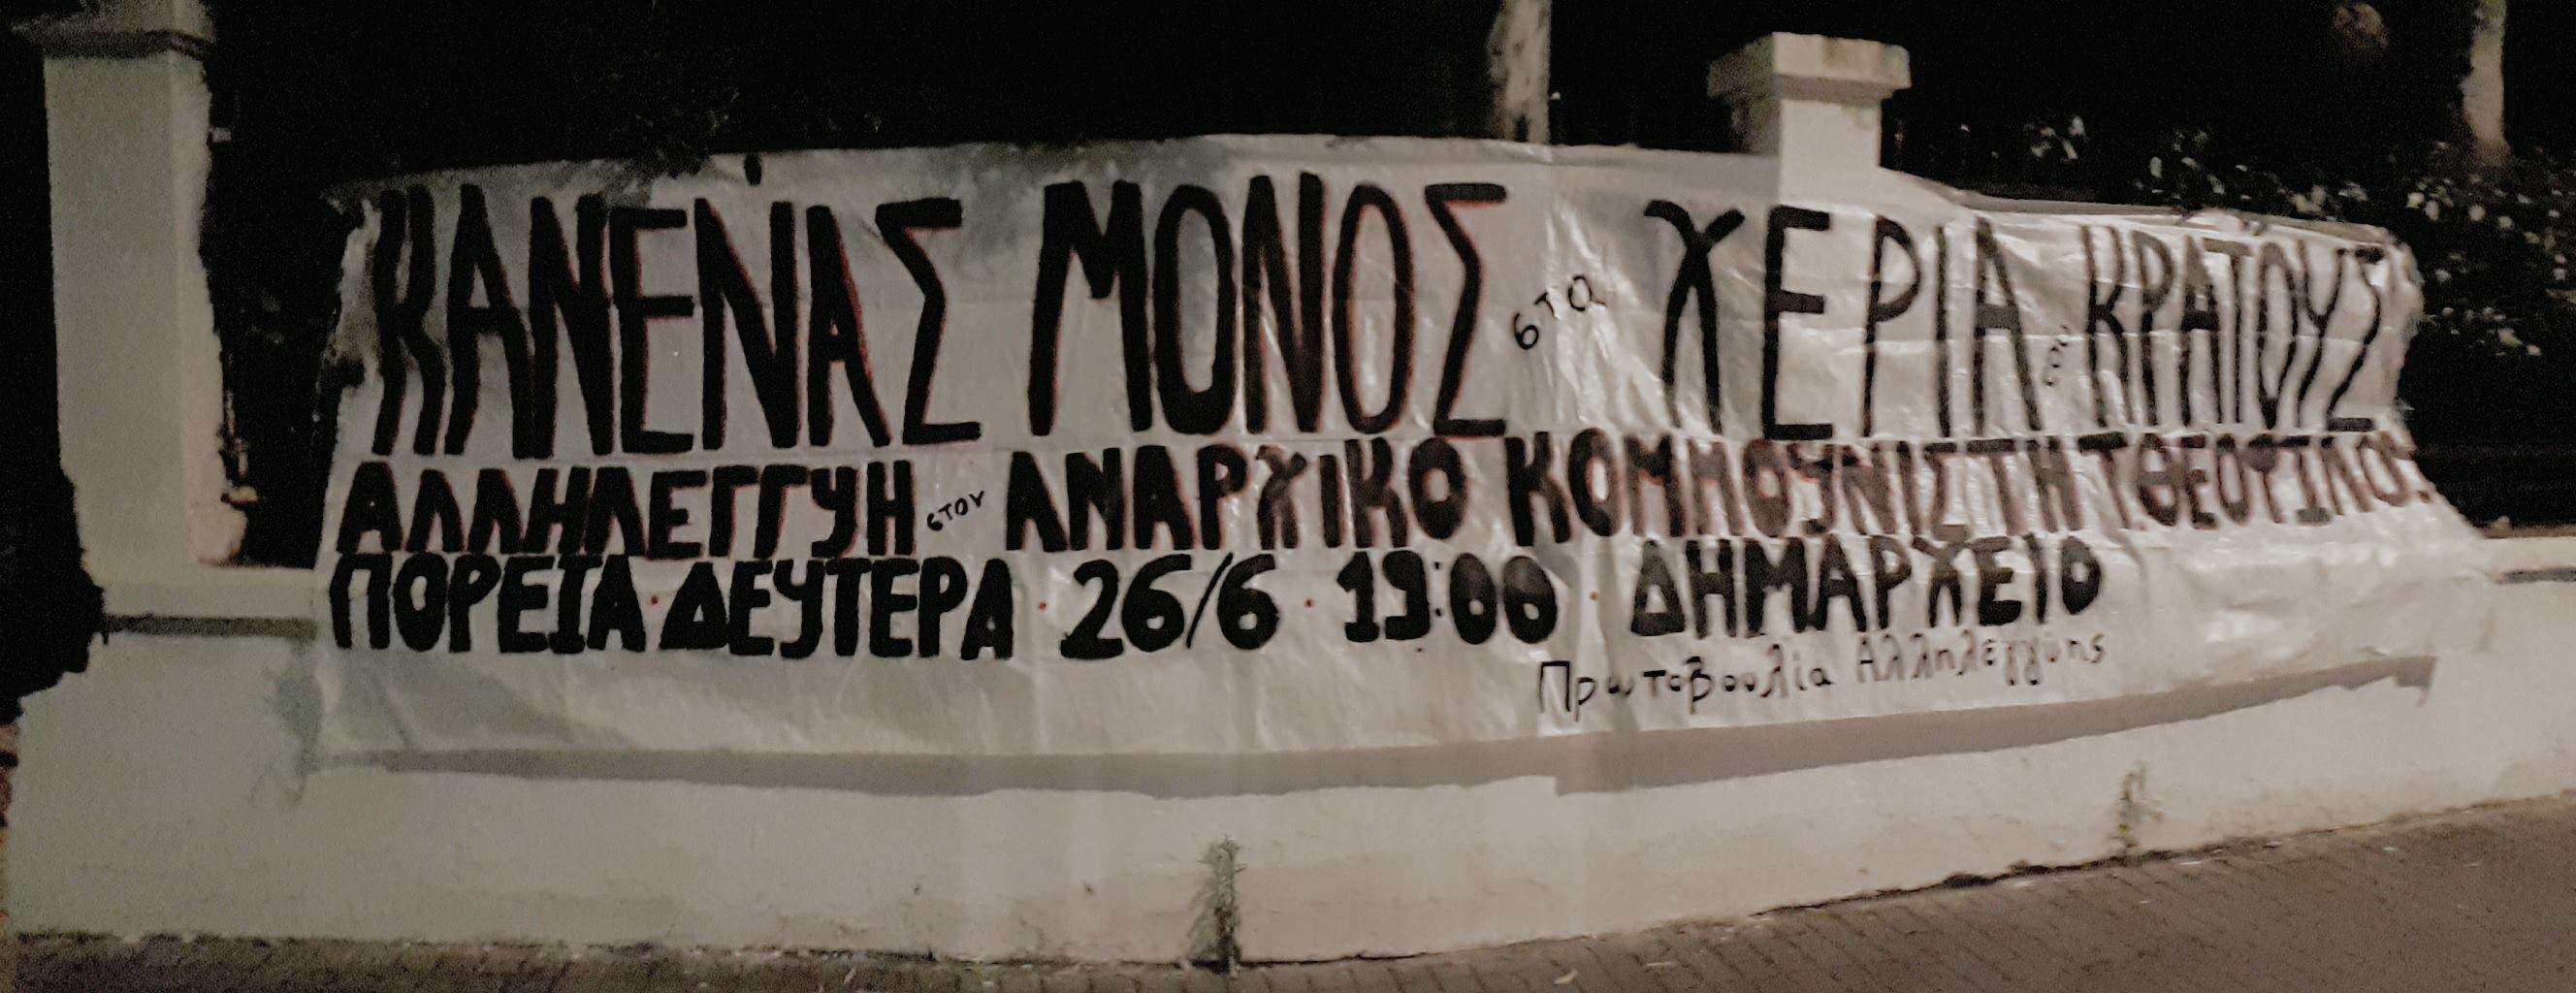 Ρέθυμνο: Ανάρτηση πανό για πορεία αλληλεγγύης στον Αναρχικό Κομμουνιστή Τάσο Θεοφίλου, [Δευτέρα 26/06, 19:00]